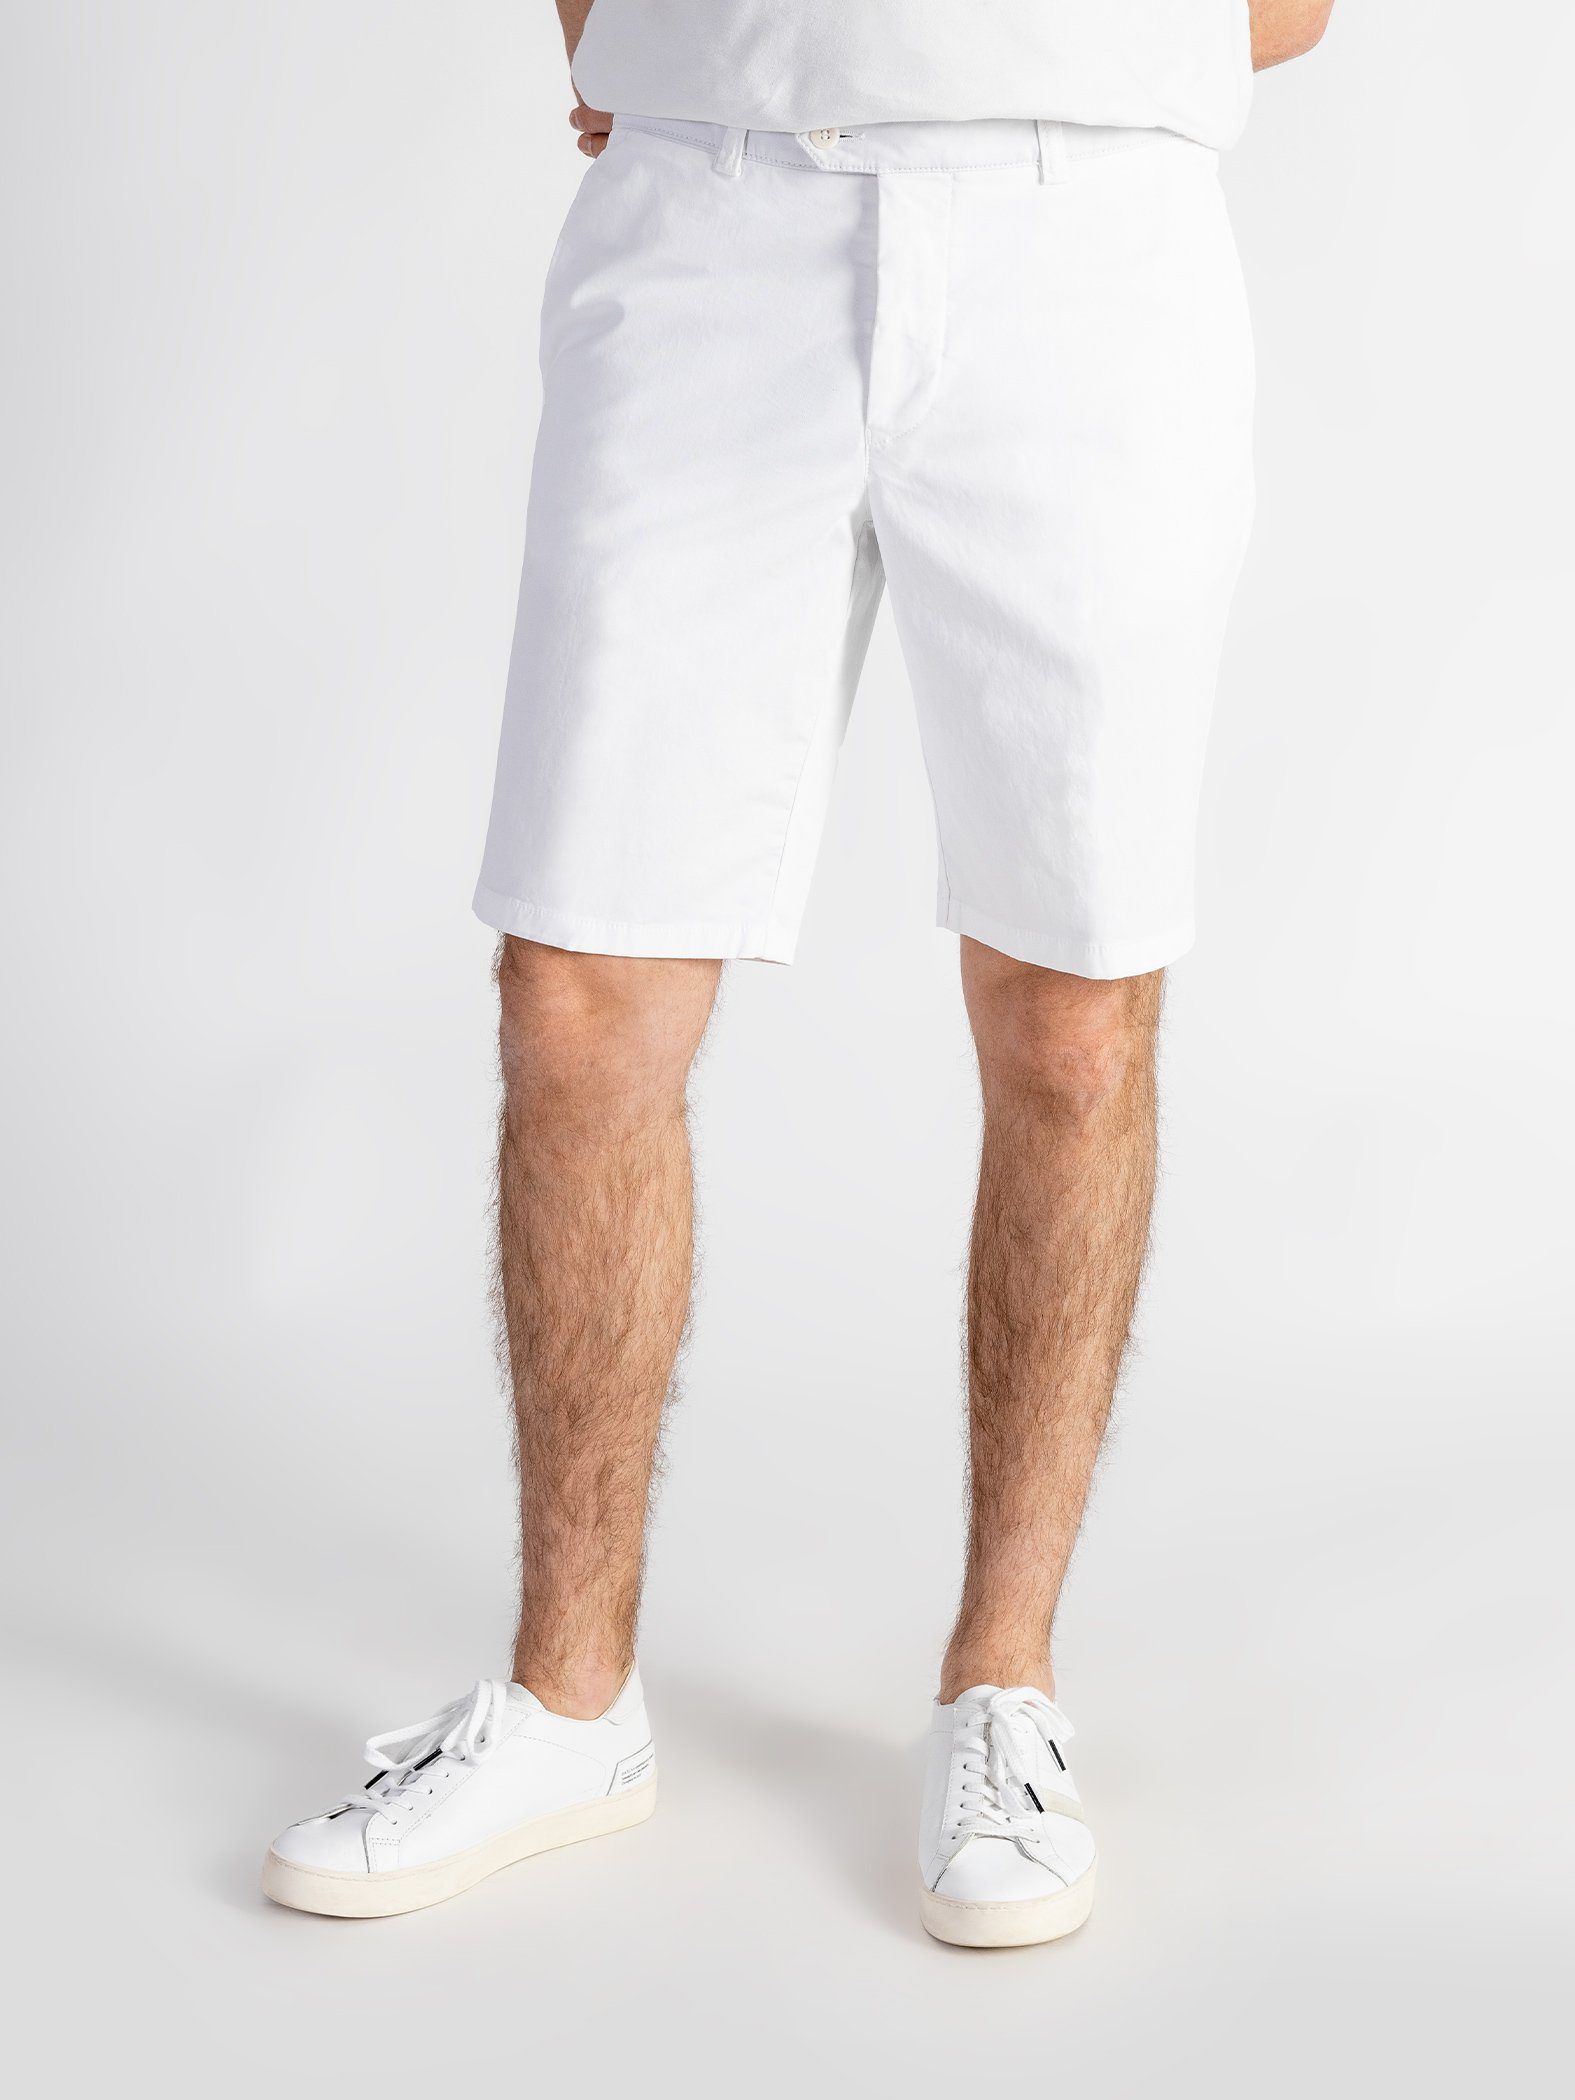 Farbauswahl, mit Weiß elastischem Shorts Bund, TwoMates Shorts GOTS-zertifiziert